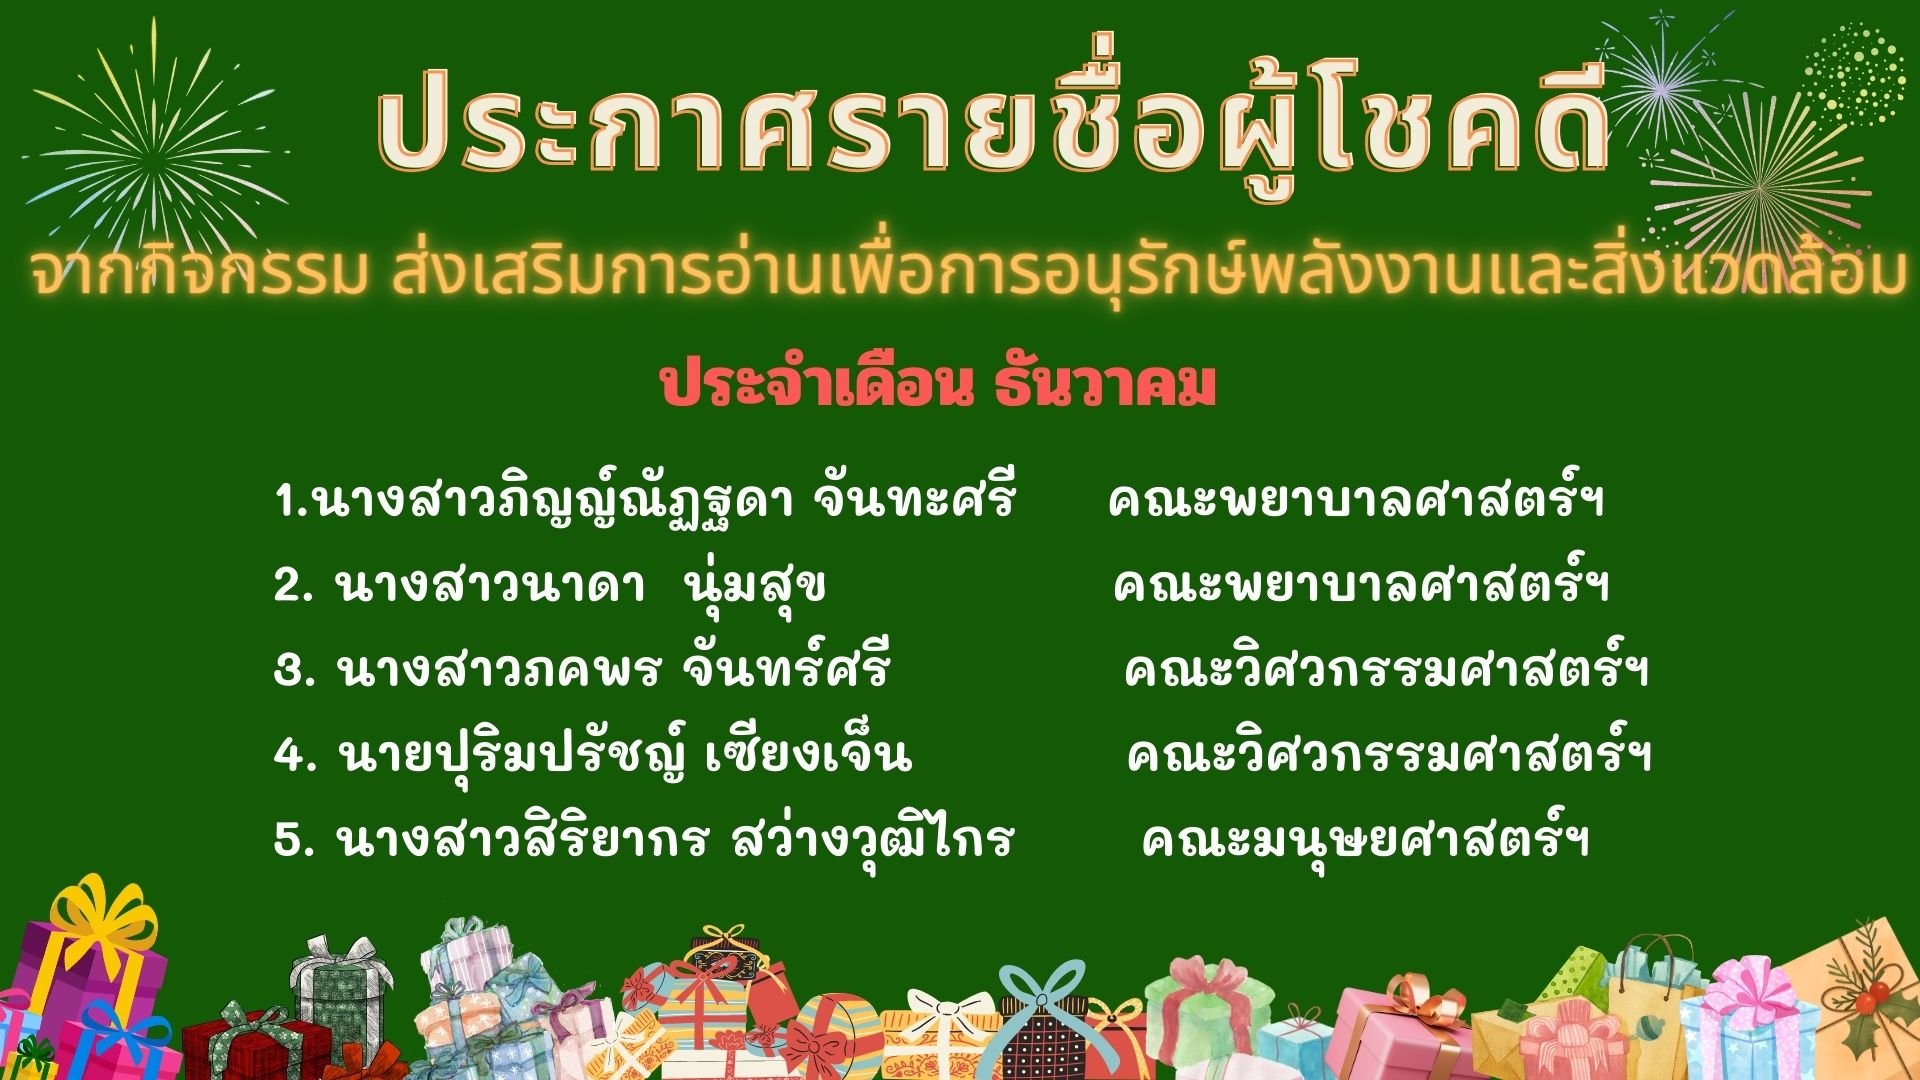 ประกาศรายชื่อผู้โชคดีที่ได้รับรางวัล  กิจกรรมตอบคำถามส่งเสริมการอ่านเพื่อการอนุรักษ์พลังงานและสิ่งแวดล้อม ในวันที่ 4 ธันวาคม “วันสิ่งแวดล้อมไทย”